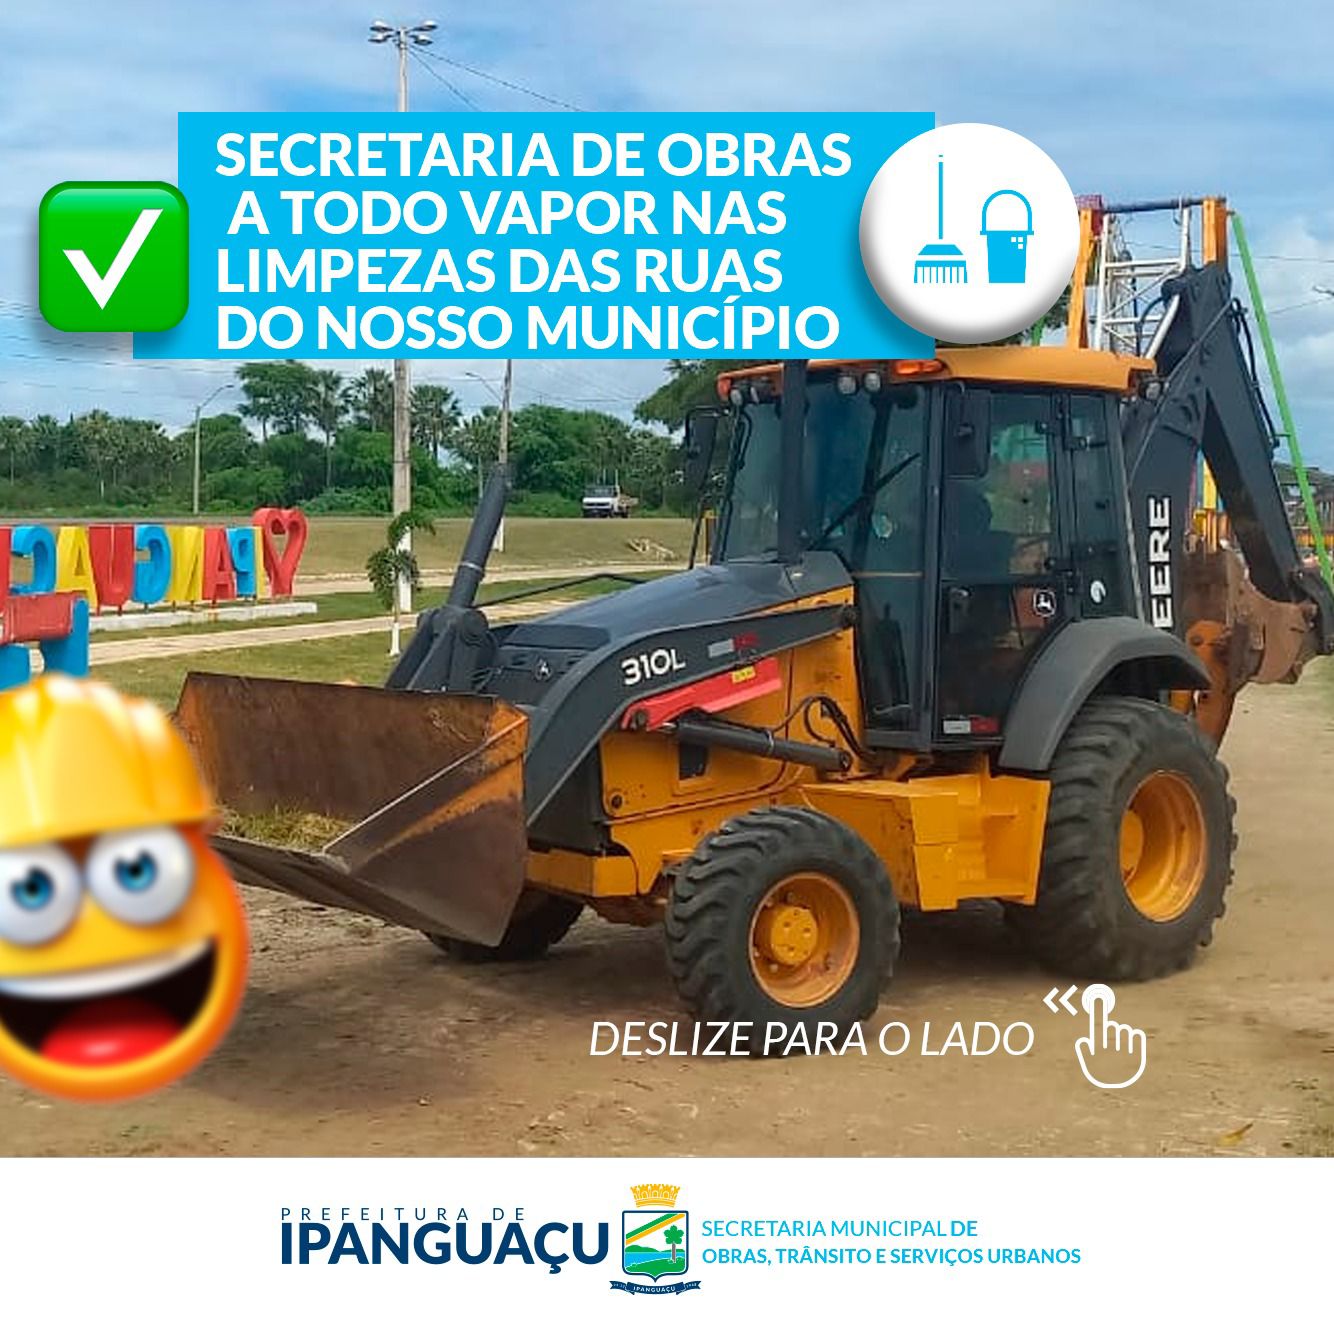 Secretaria de Obras avança no trabalho de limpeza urbana pelas ruas de Ipanguaçu